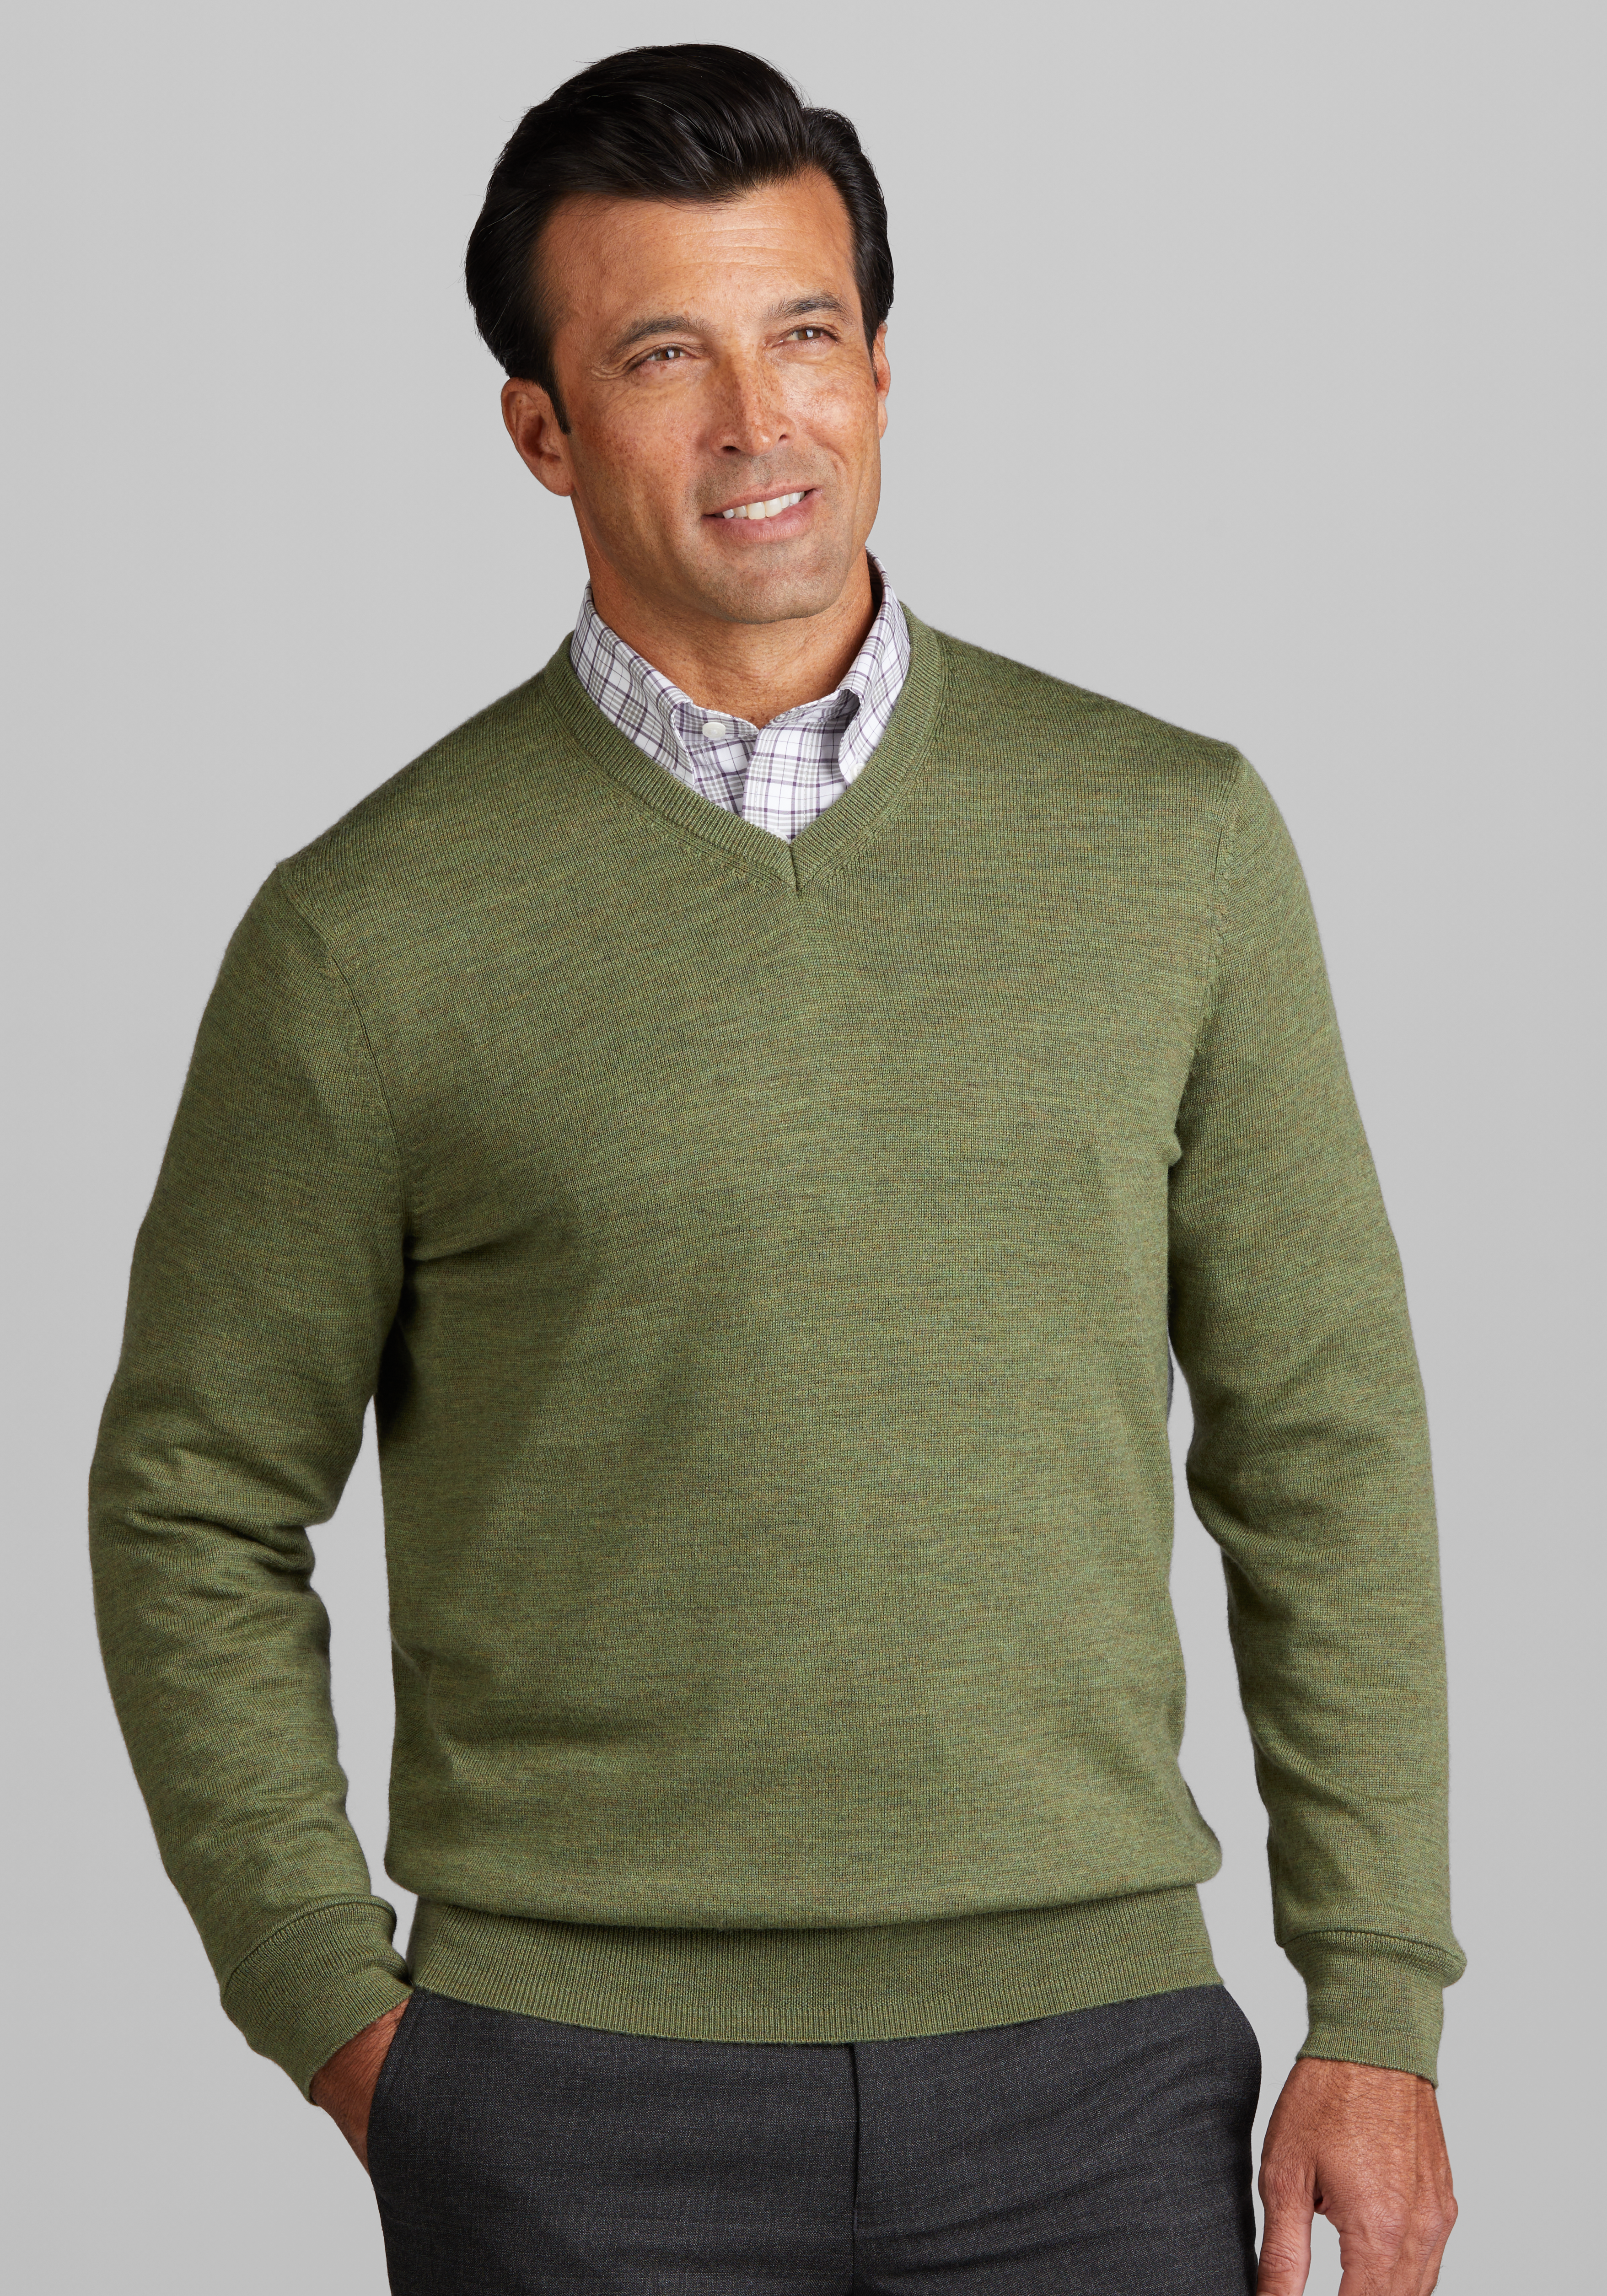 Men's V-Neck Sweaters, Shop V Neck Sweaters for Men